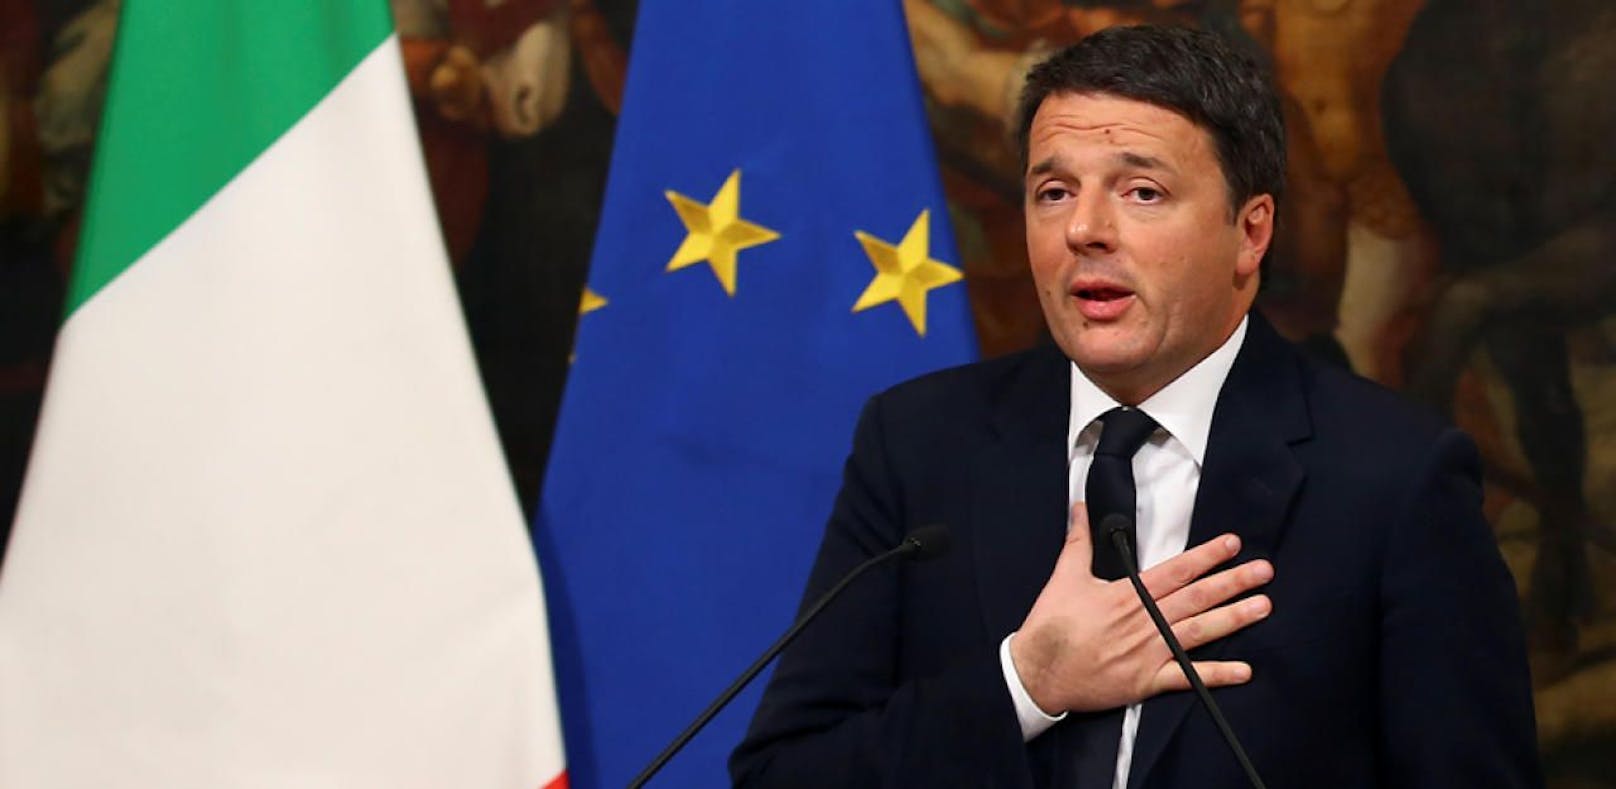 Matteo Renzi tritt nach Niederlage zurück